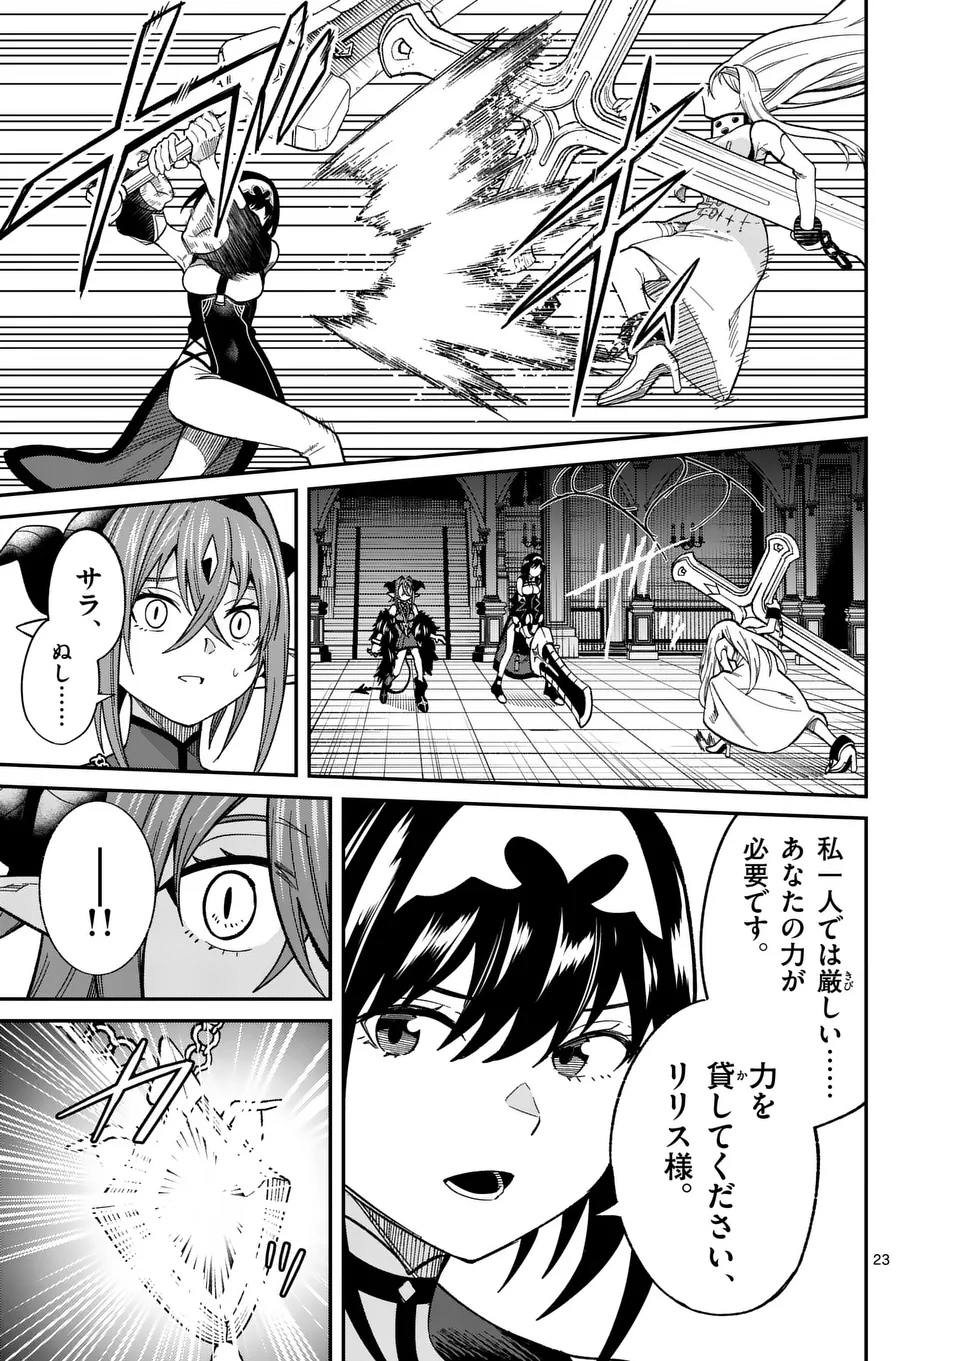 Power-Hara Genkai Yuusha, Maougun kara Koutaiguu de Scout sareru - Chapter 12 - Page 23